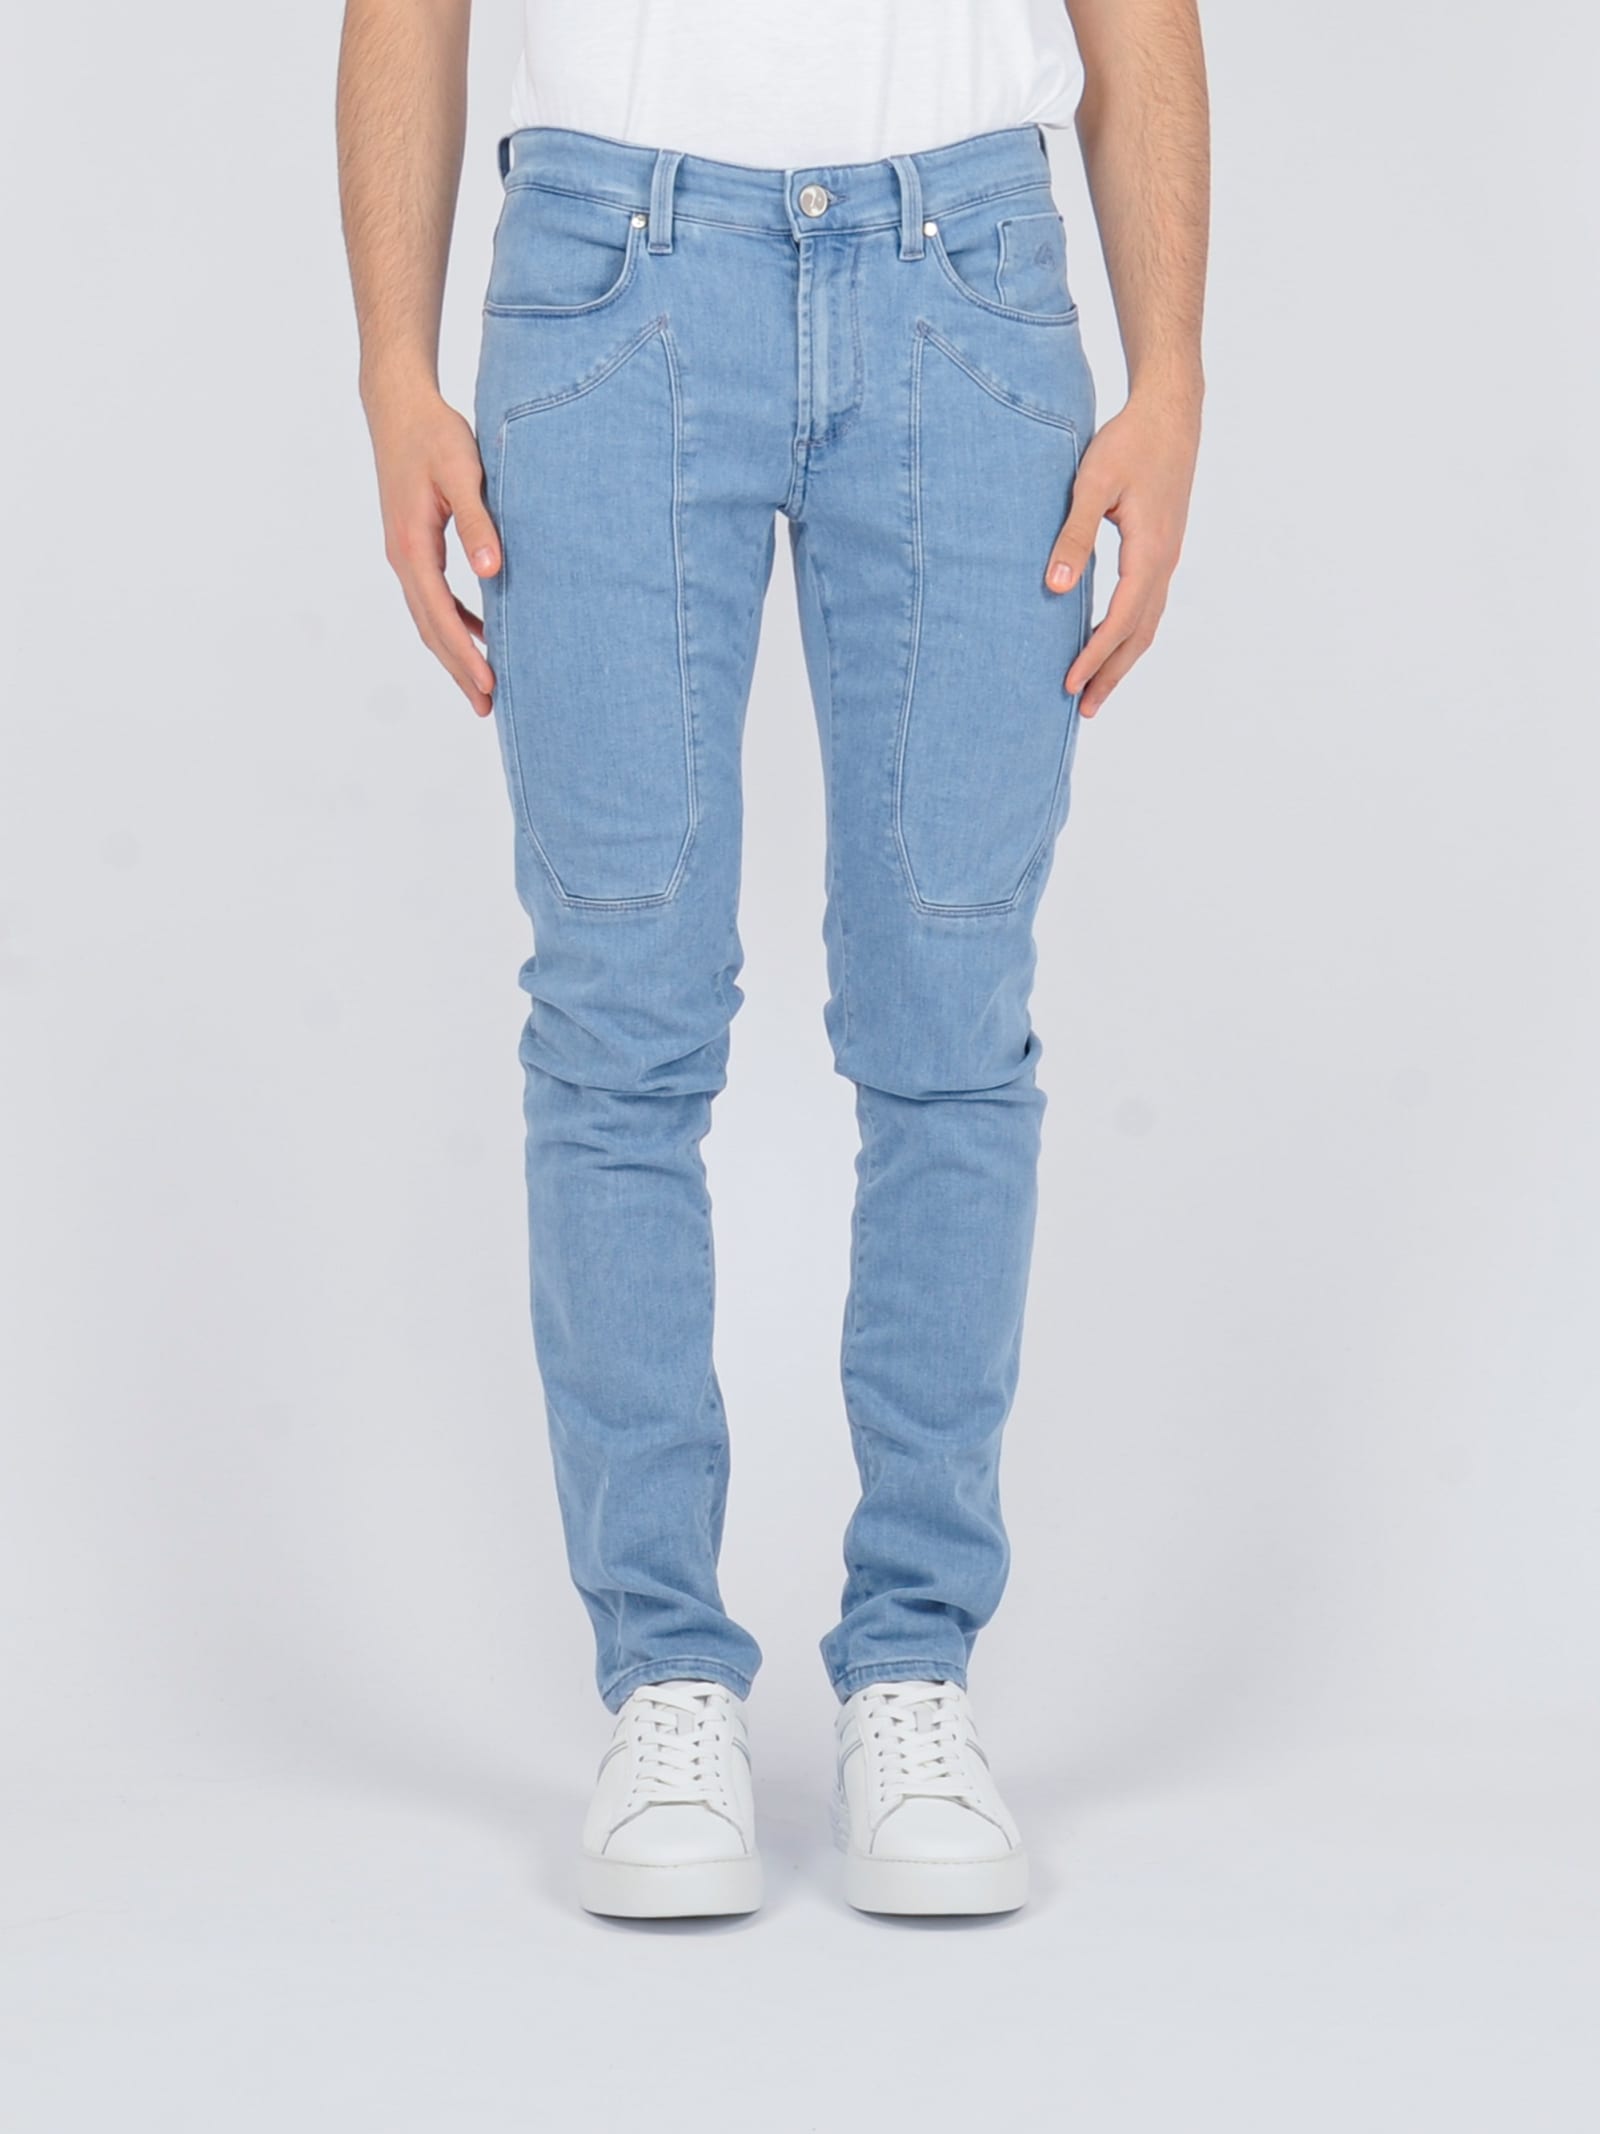 Jeckerson 5pkts Patch Slim Jeans